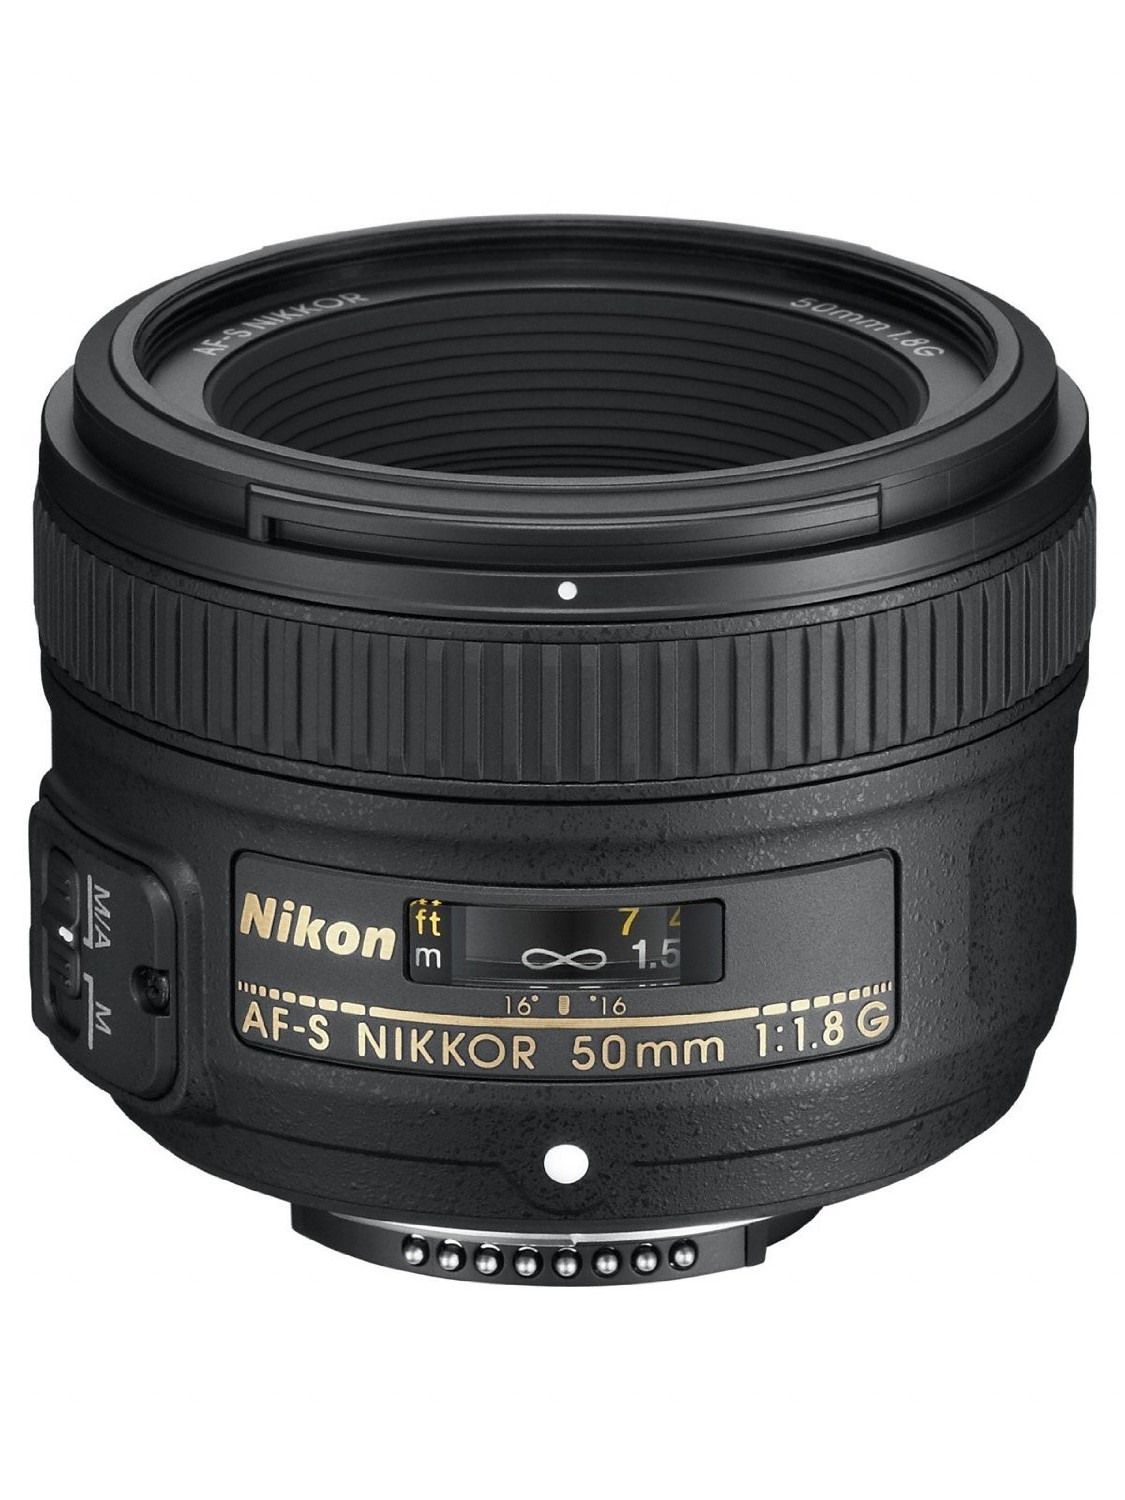 Hot Deal – AF-S NIKKOR 50mm f/1.8G Lens for $149 !